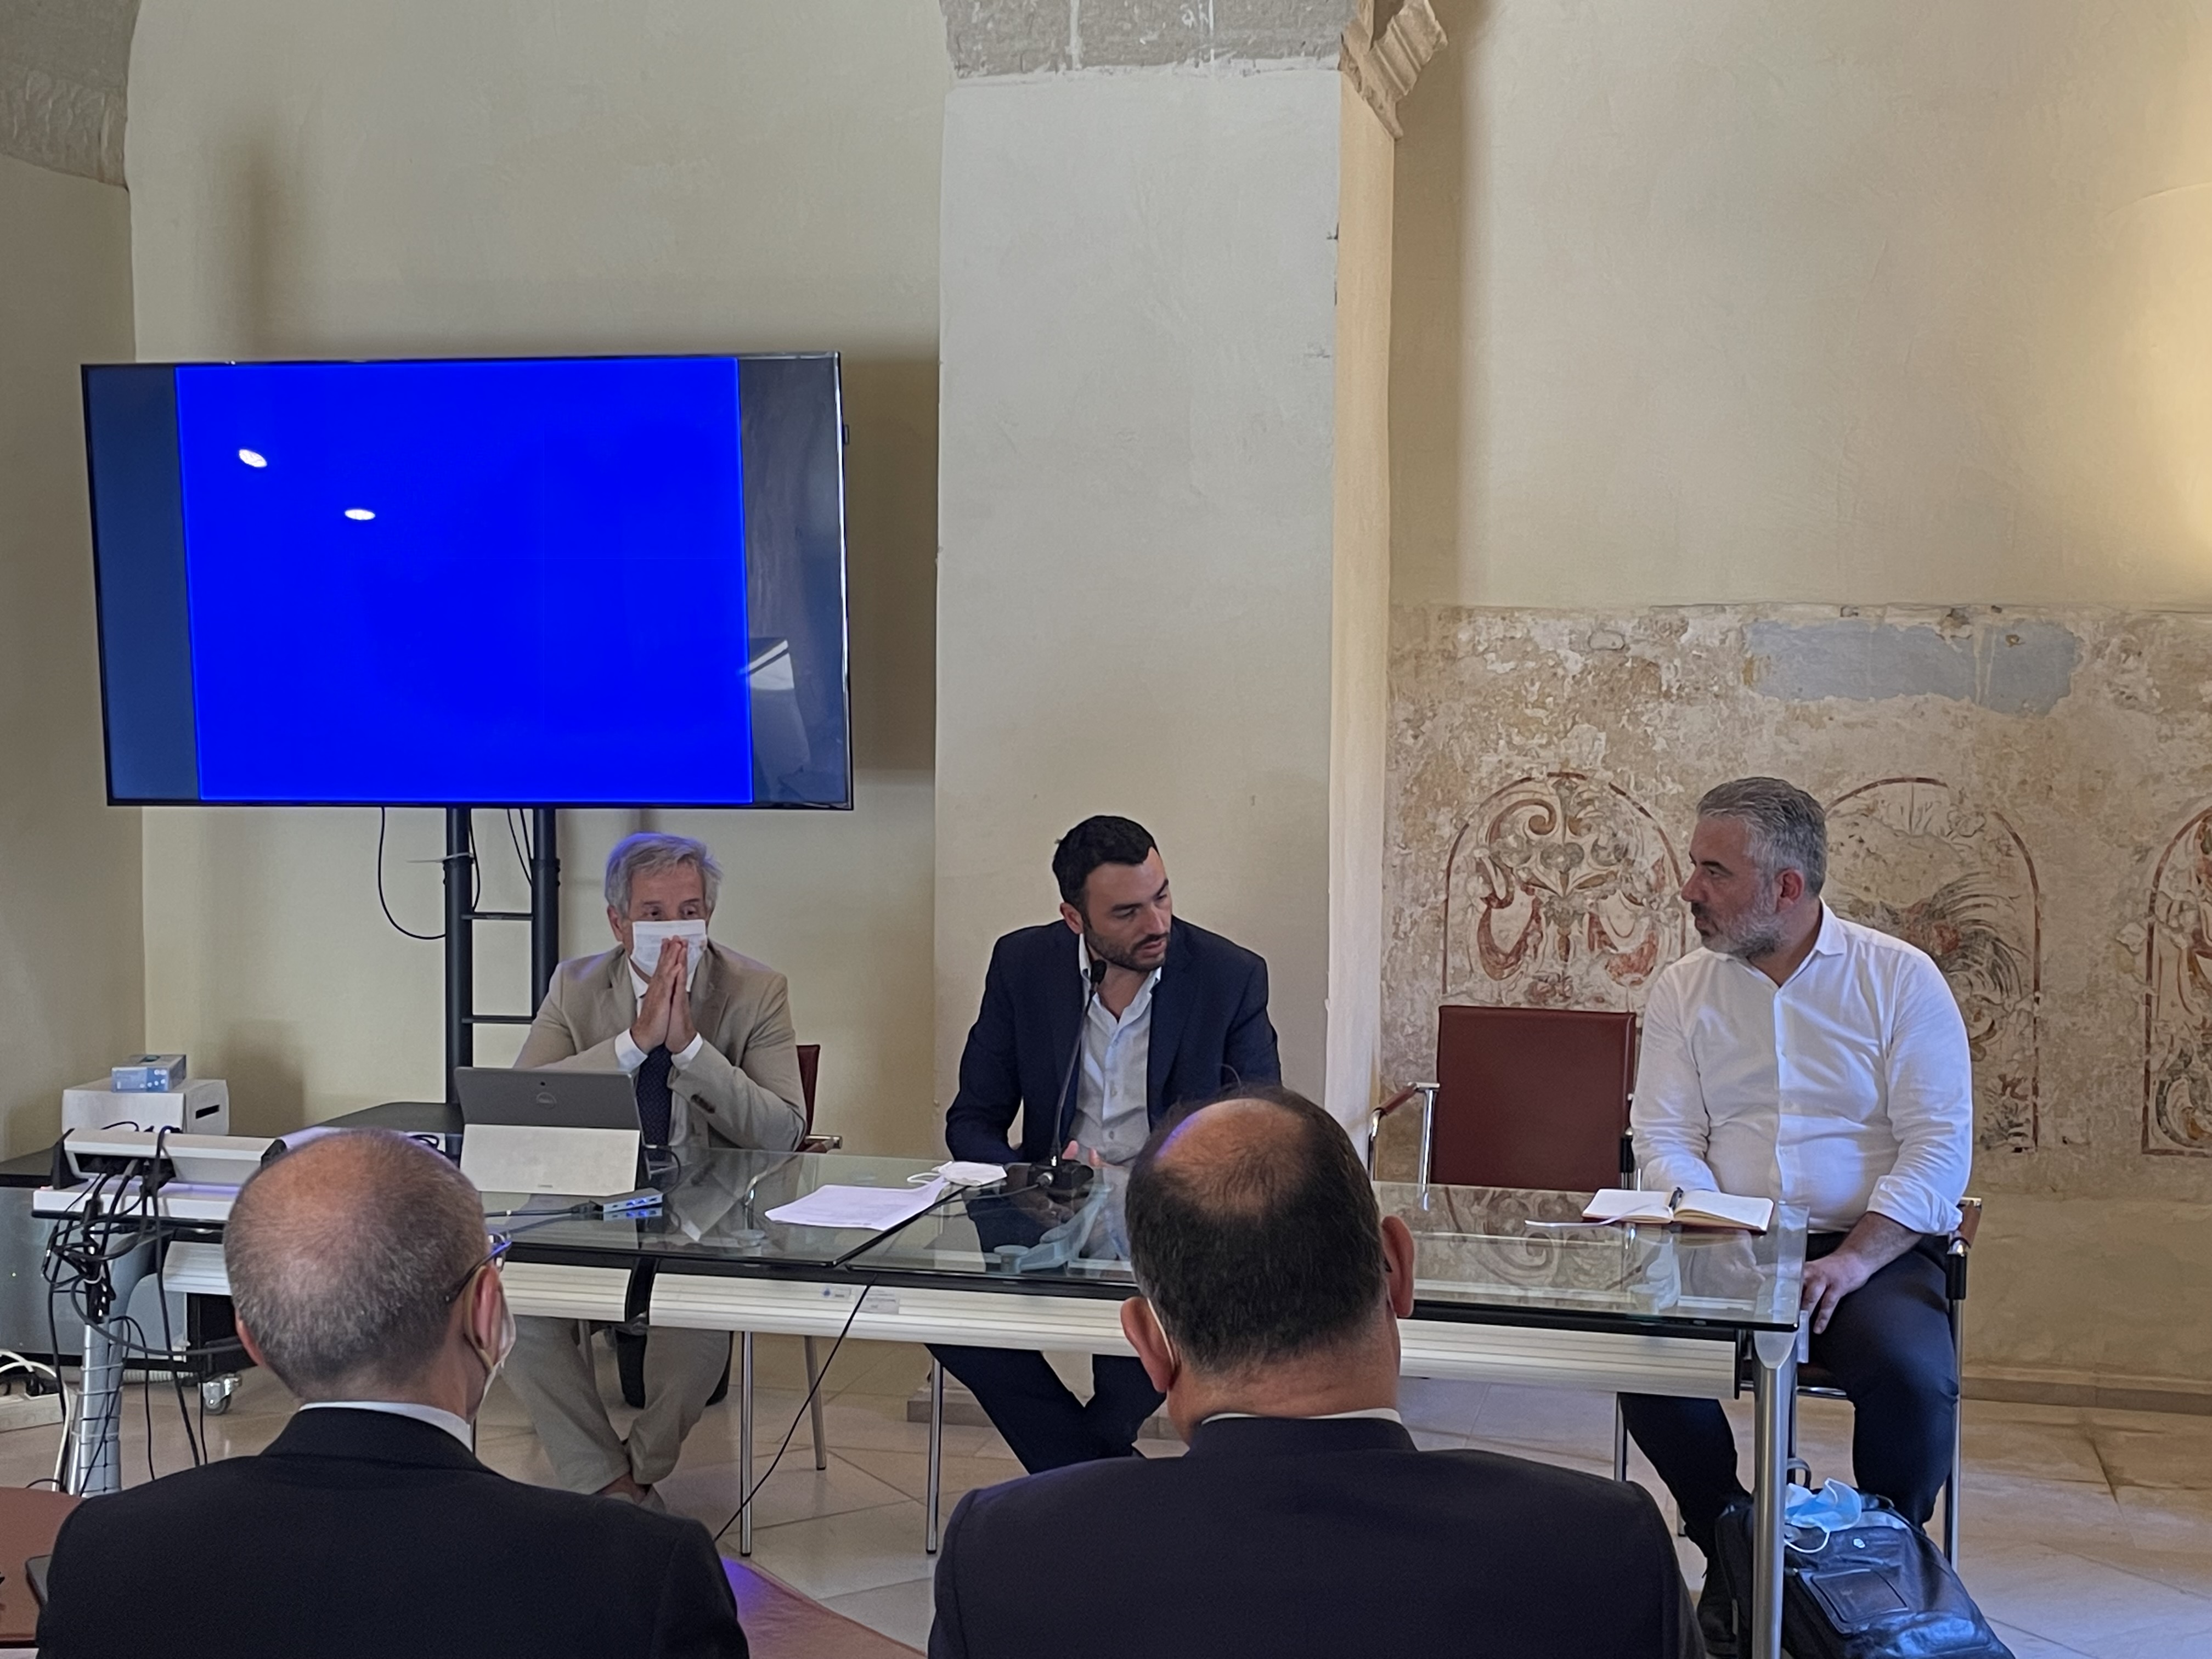 Galleria Incontri bilaterali Puglia - Albania: la cultura dell’innovazione per la crescita dei territori transfrontalieri - Diapositiva 9 di 11